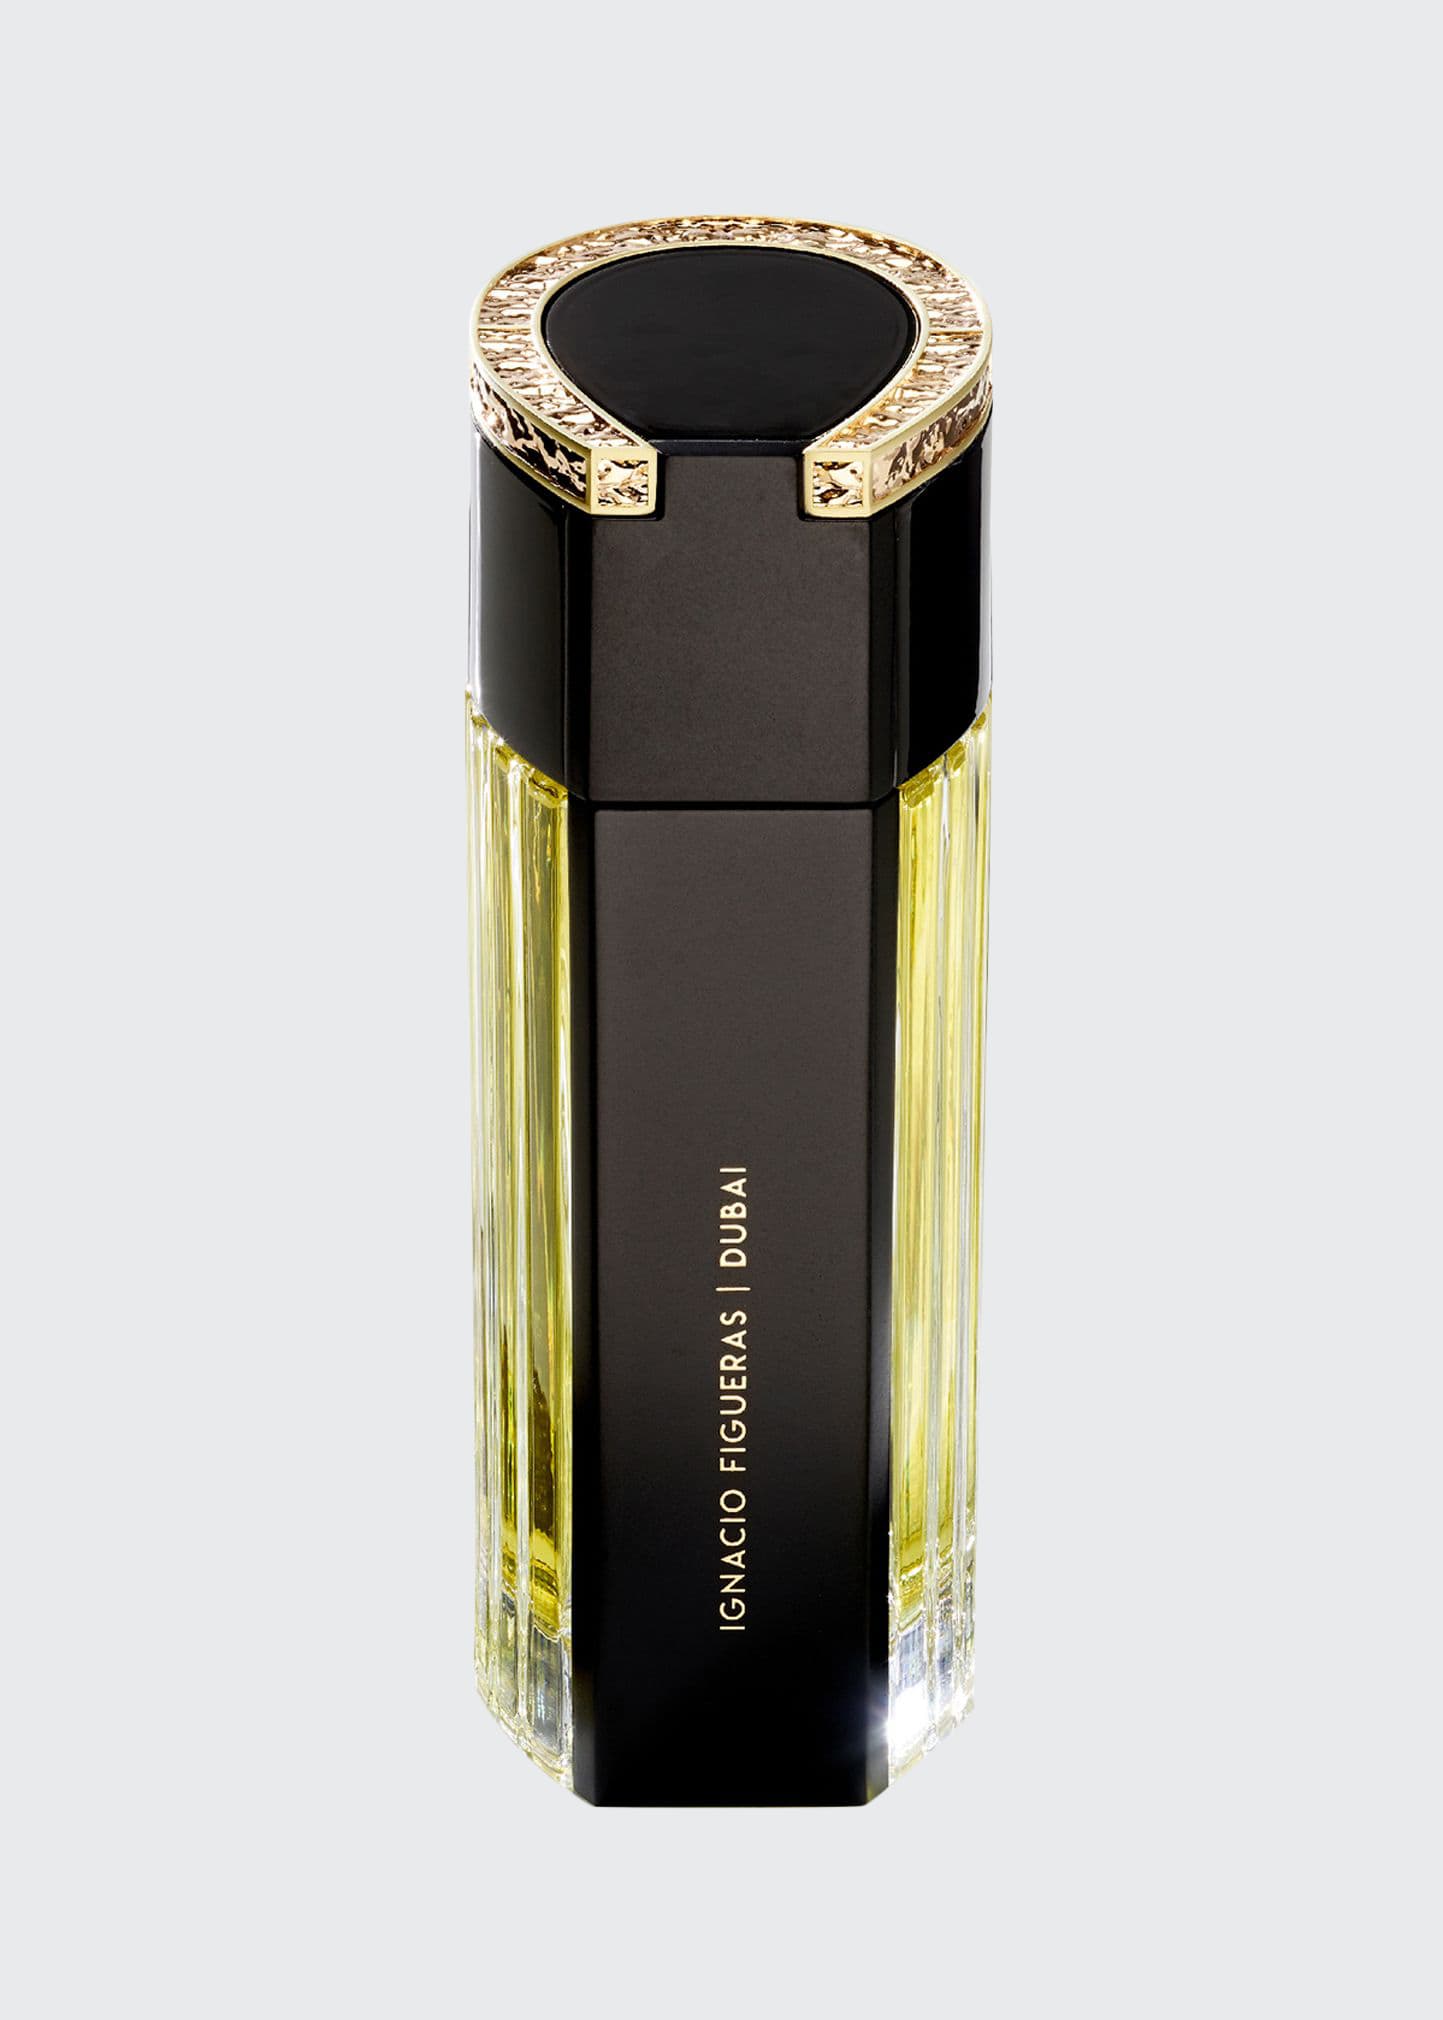 Dubai Eau de Parfum Spray, 3.4 oz./ 100 mL